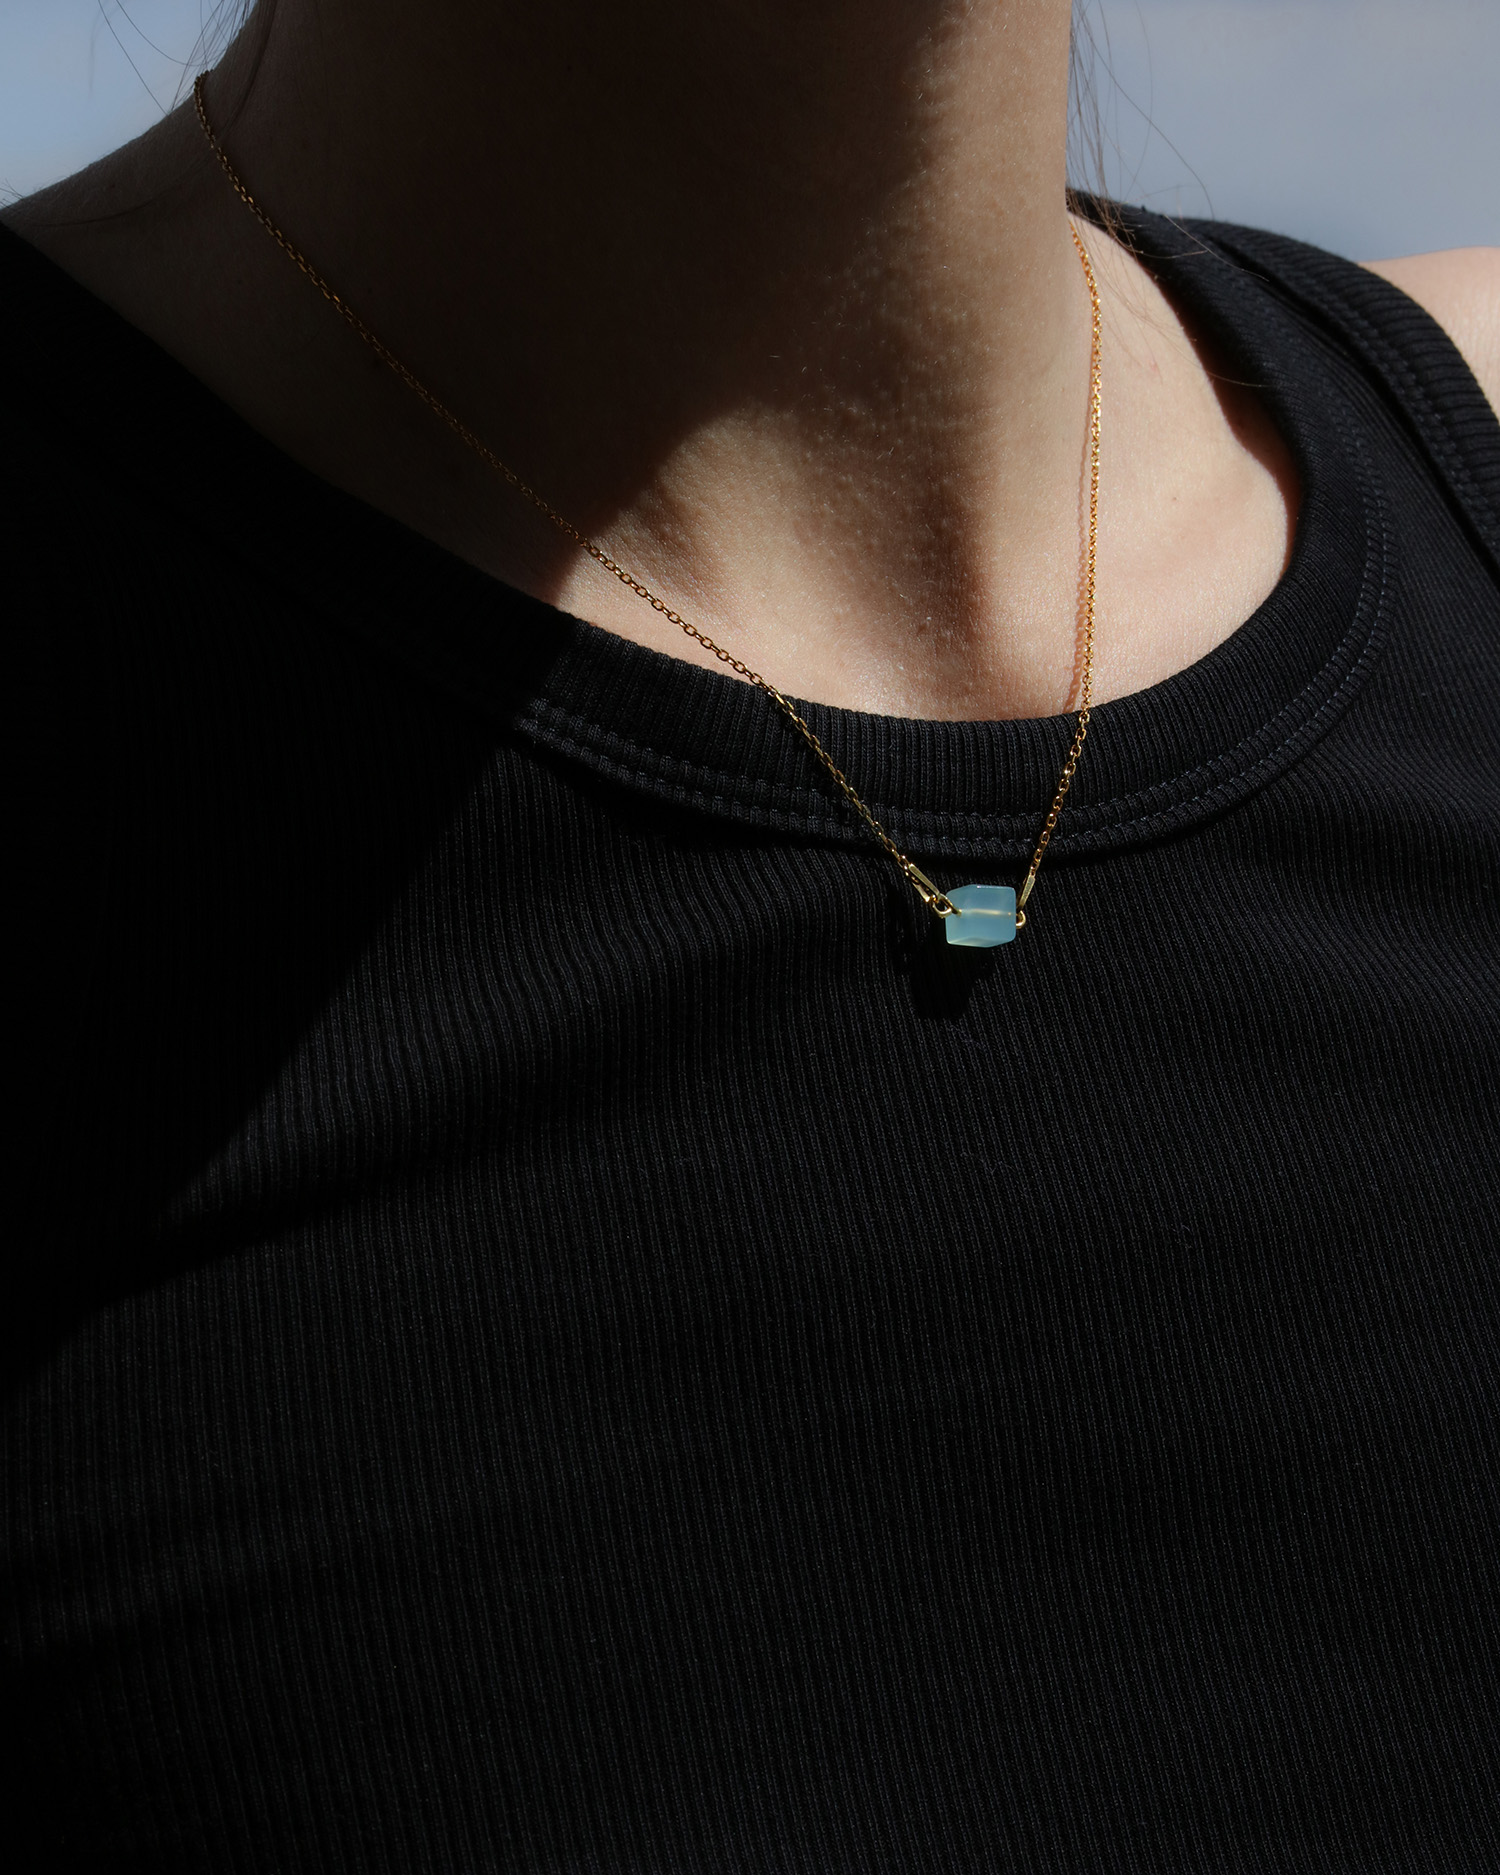 metaformi_design_jewelry_cube_necklace_aquamarine_model